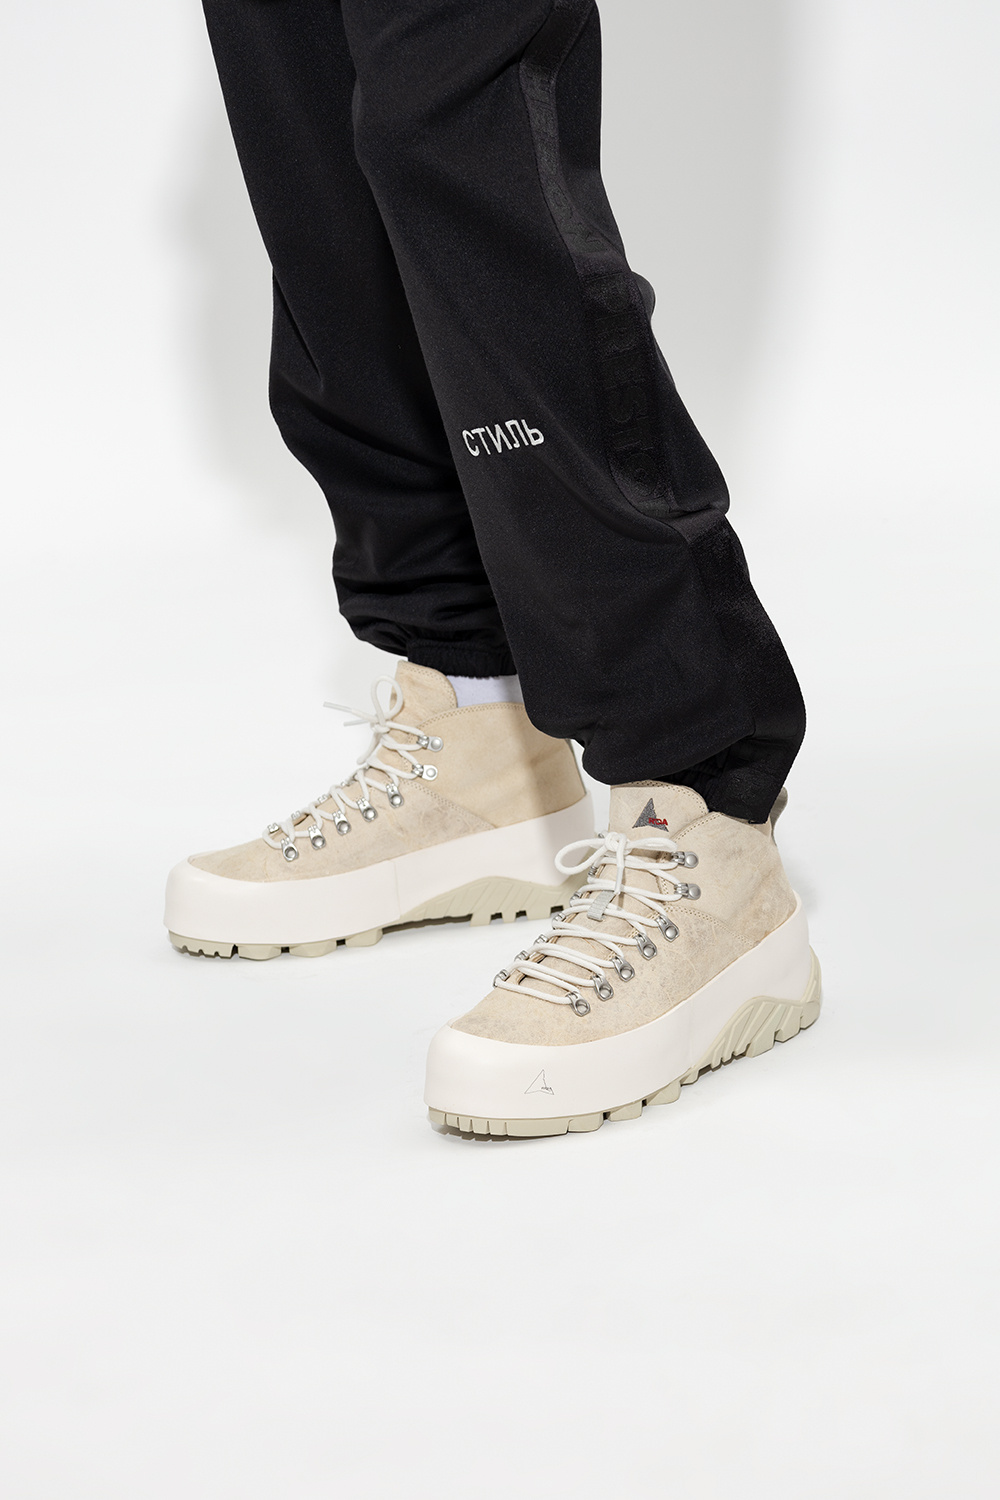 StclaircomoShops | ROA 'CVO' hiking boots | Men's Shoes | Shoes